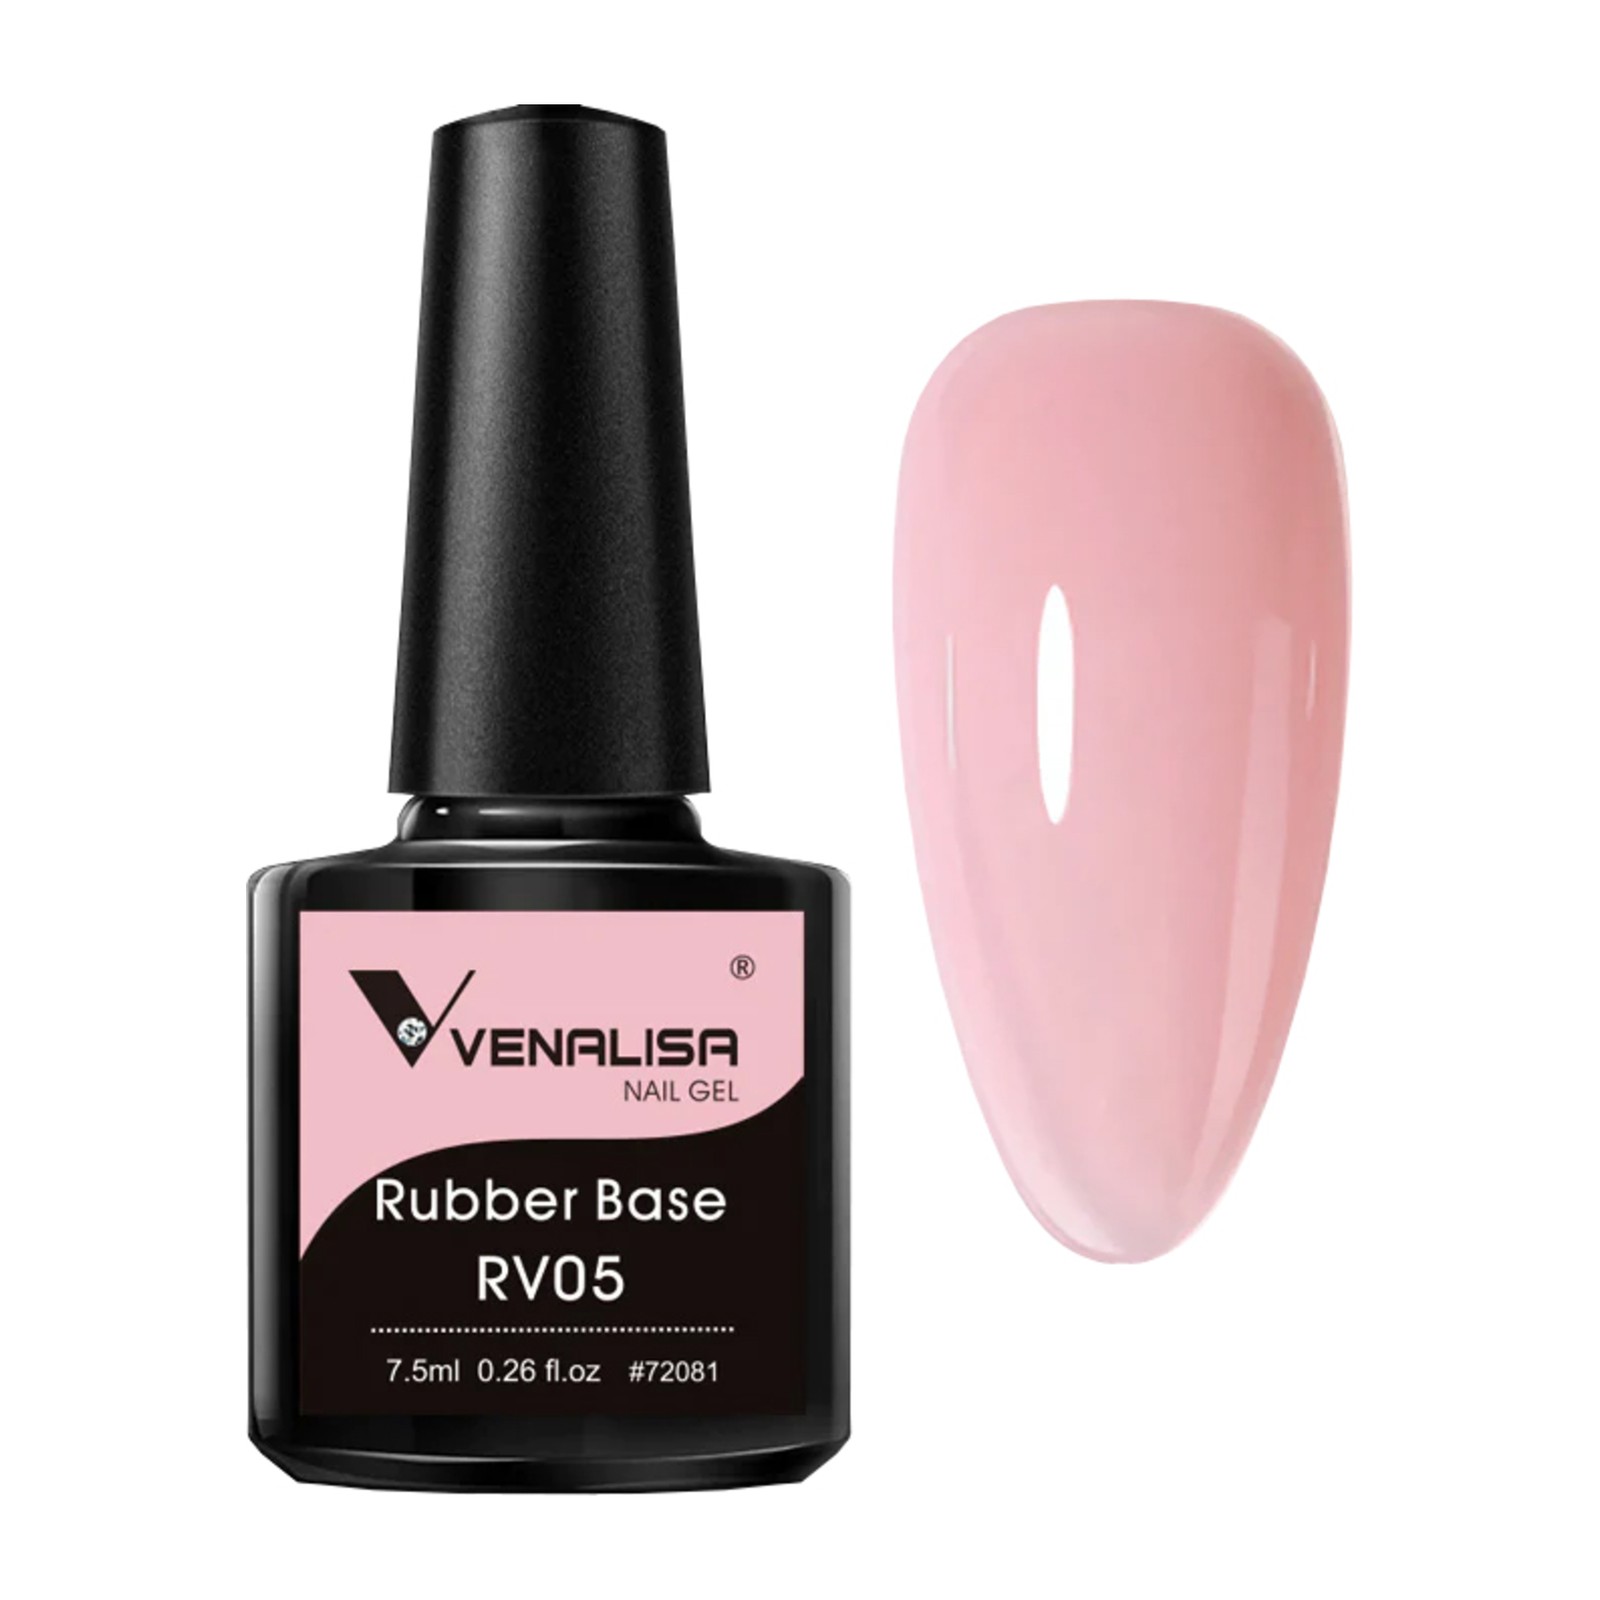 Venalisa - Rubber Base RV05 - 7.5ml